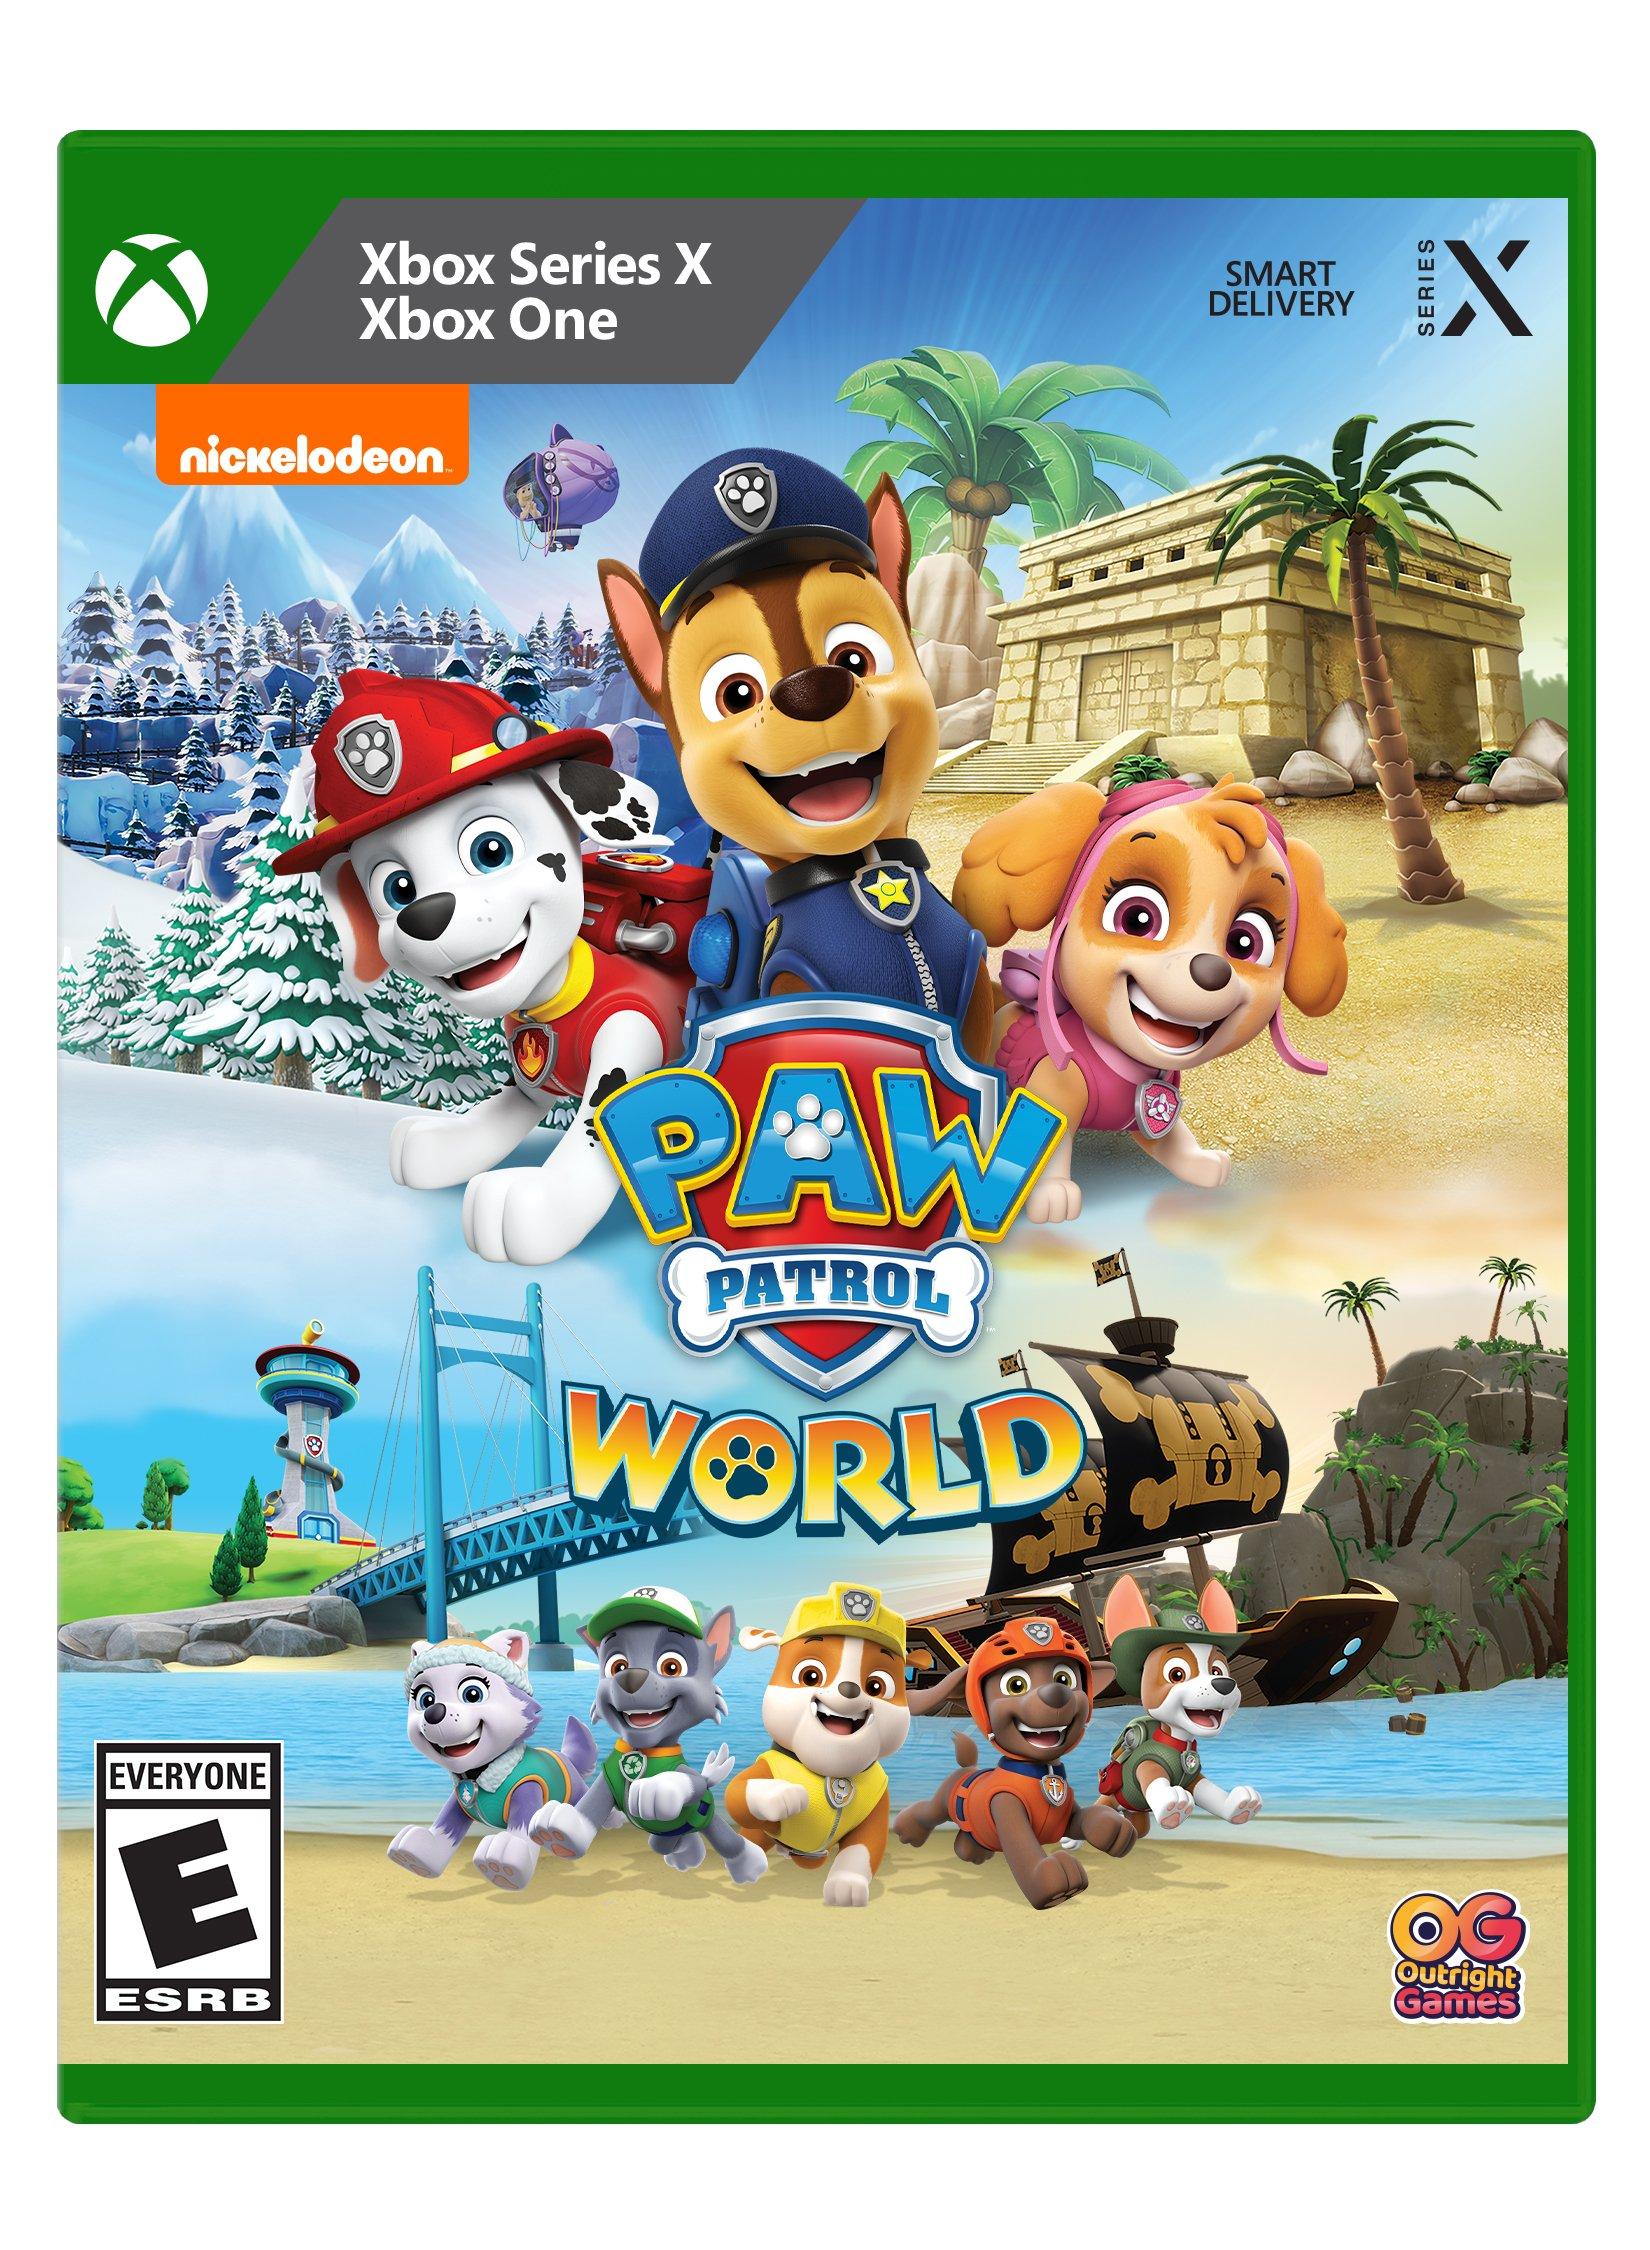 Series | Xbox Series X, Xbox GameStop X Paw World One | Patrol Xbox -